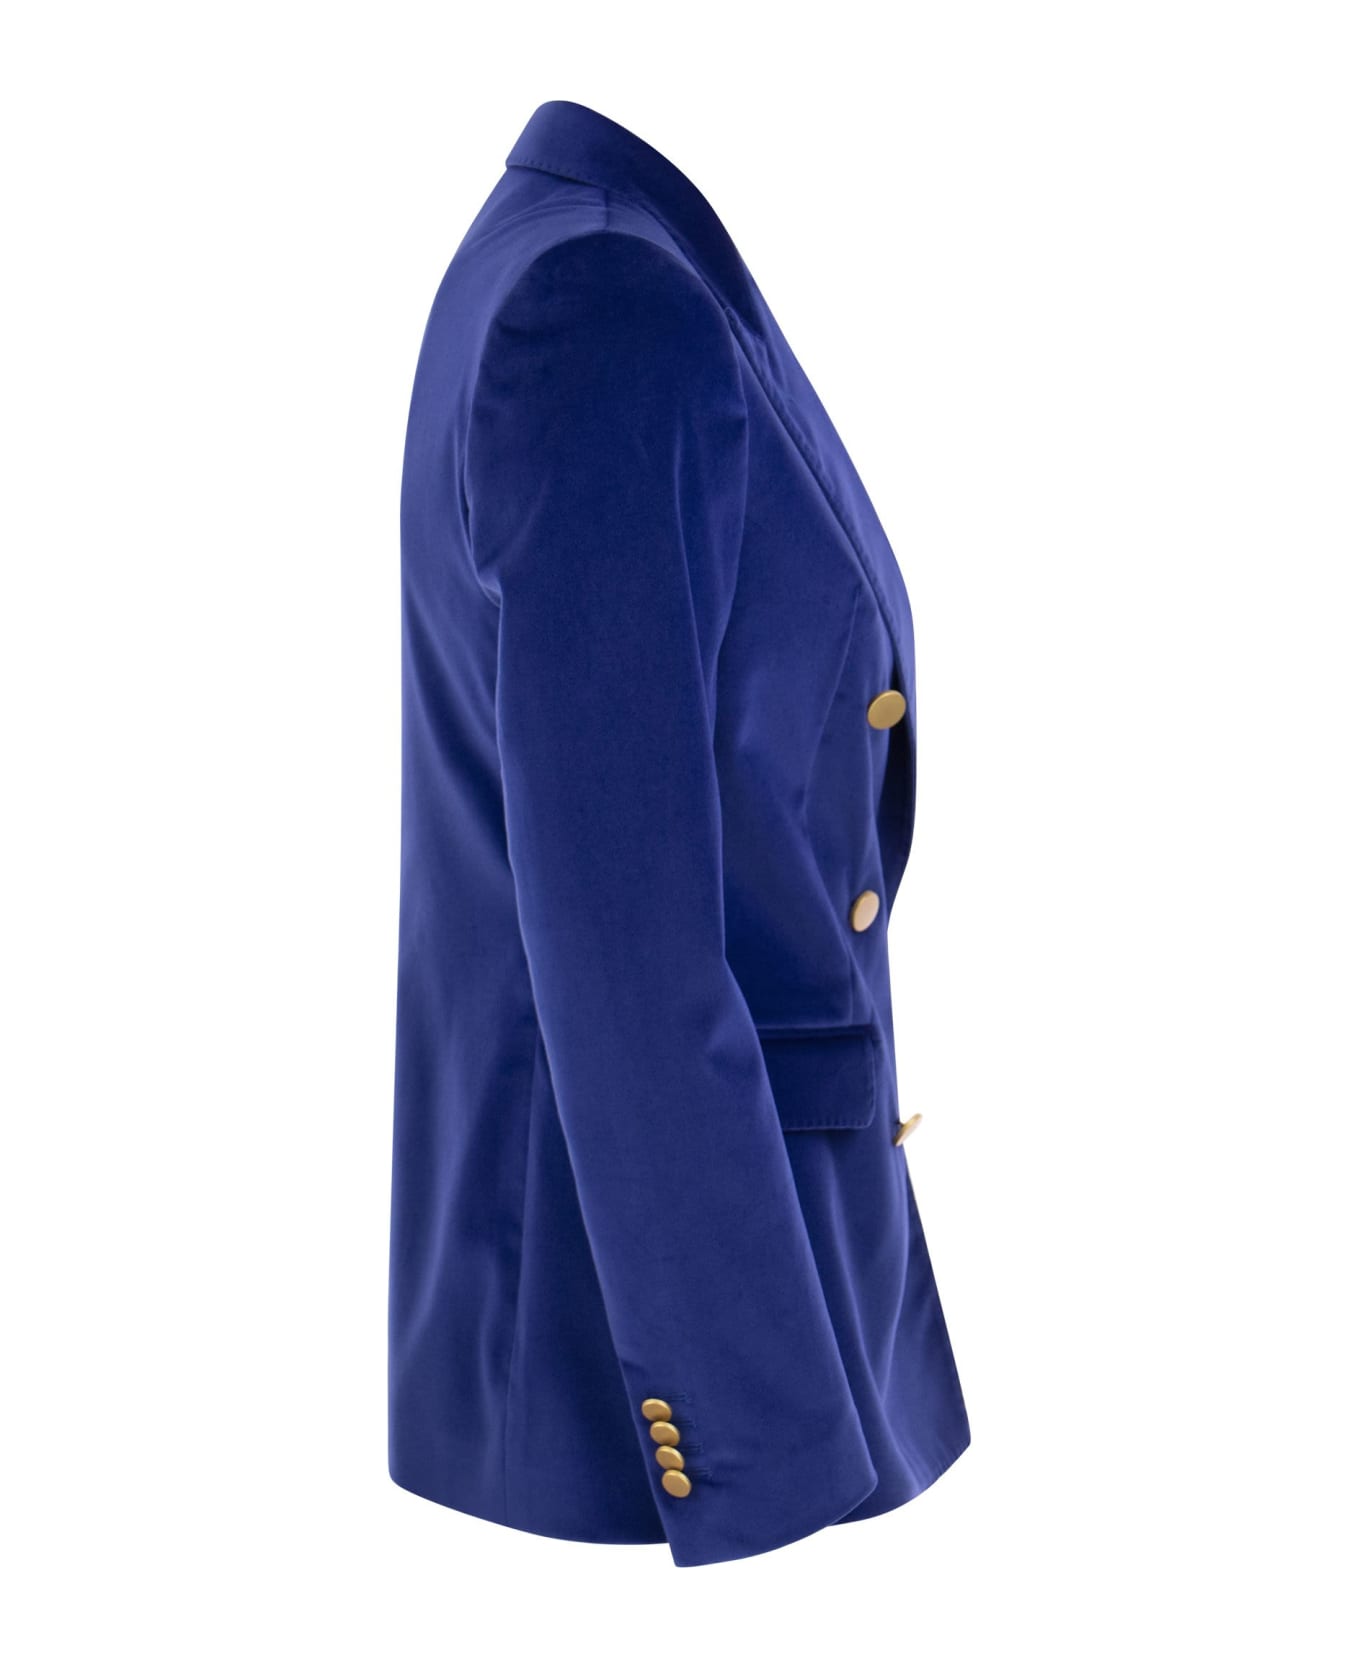 Tagliatore Paris - Velvet Jacket - Bluette コート